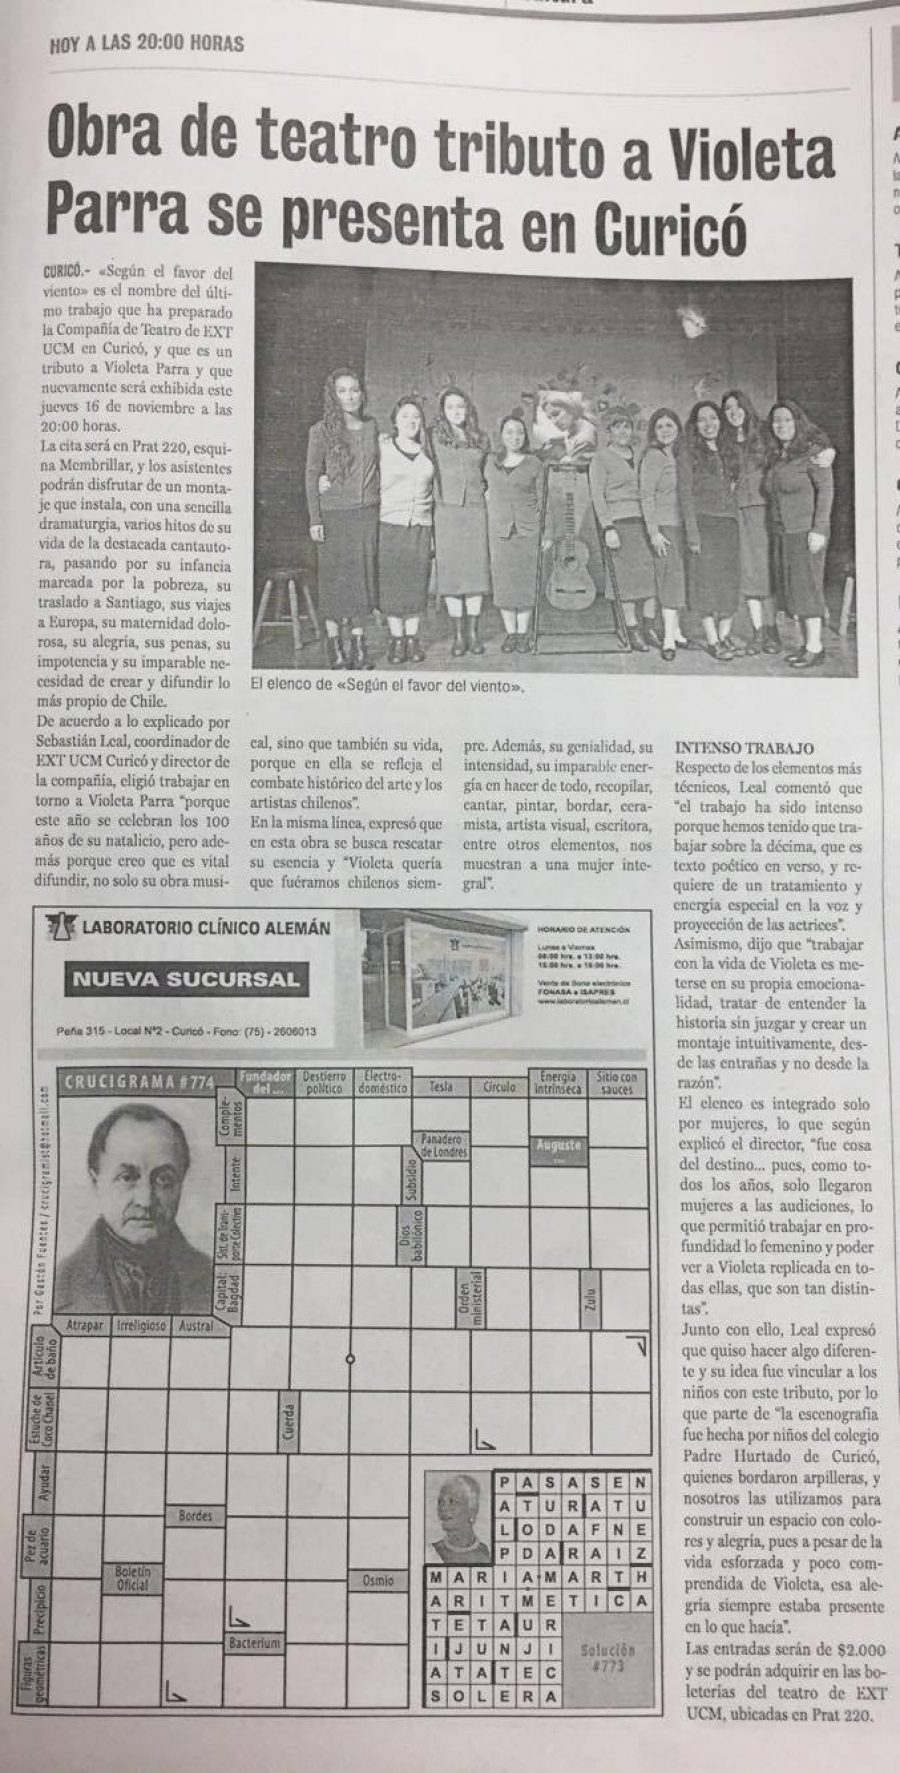 17 de noviembre en Diario La Prensa: “Obra Tributo a Violeta Parra se presenta en Curicó”